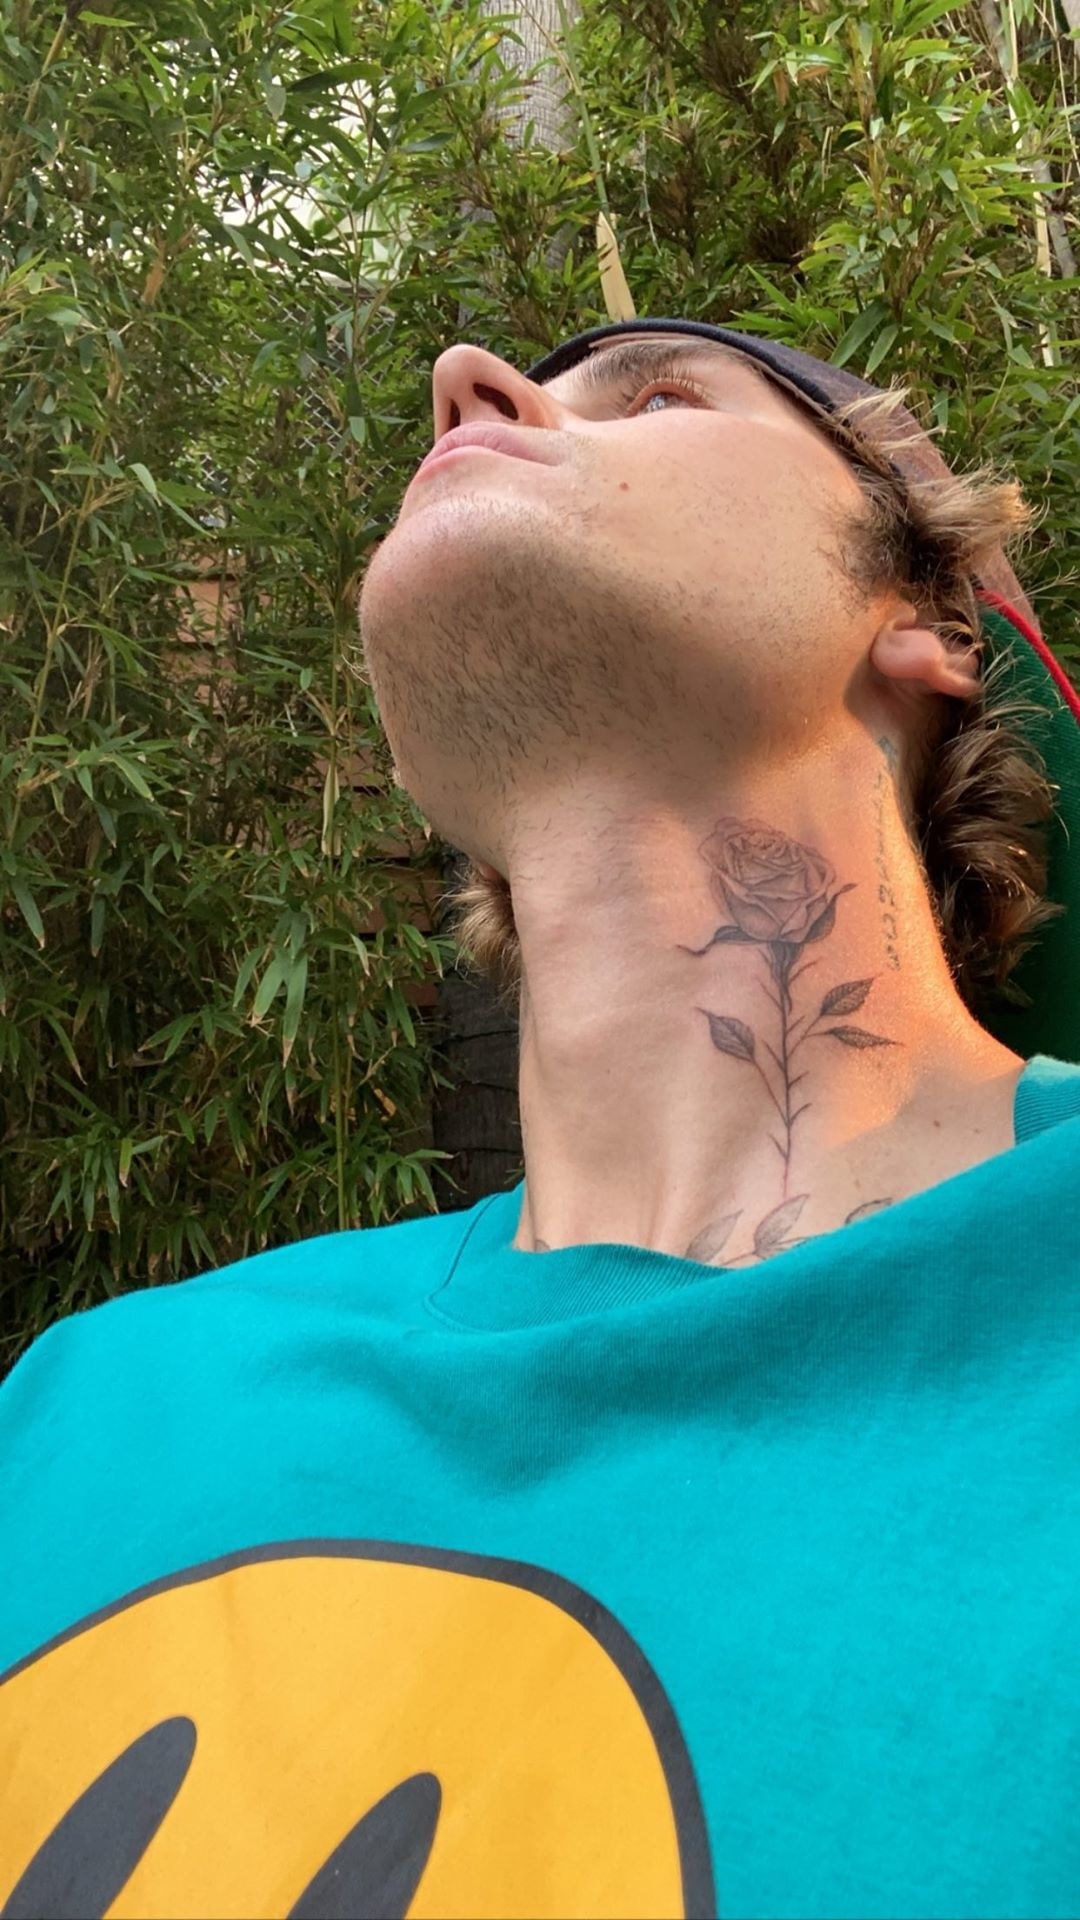 Black Ink Rose Tattoo On Man Side Neck